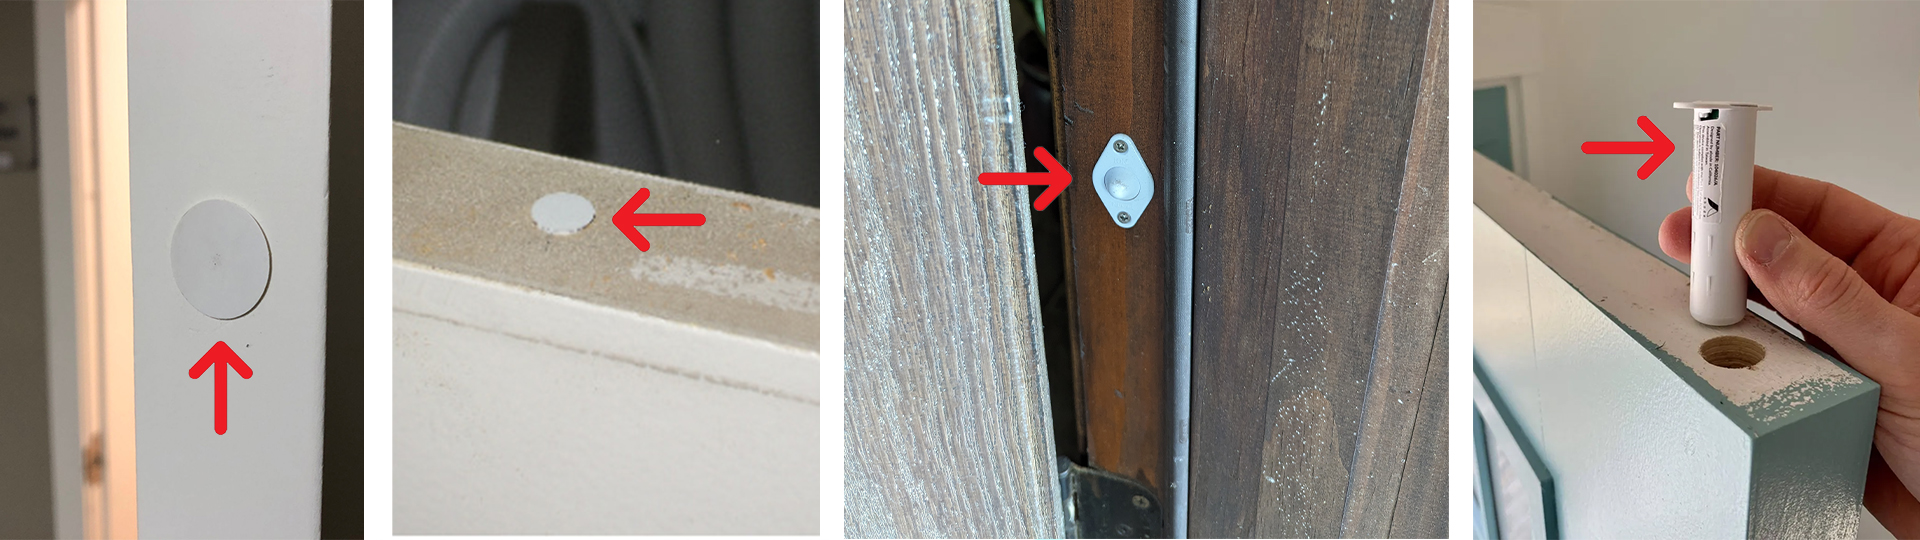 Recessed security door sensors in door frames